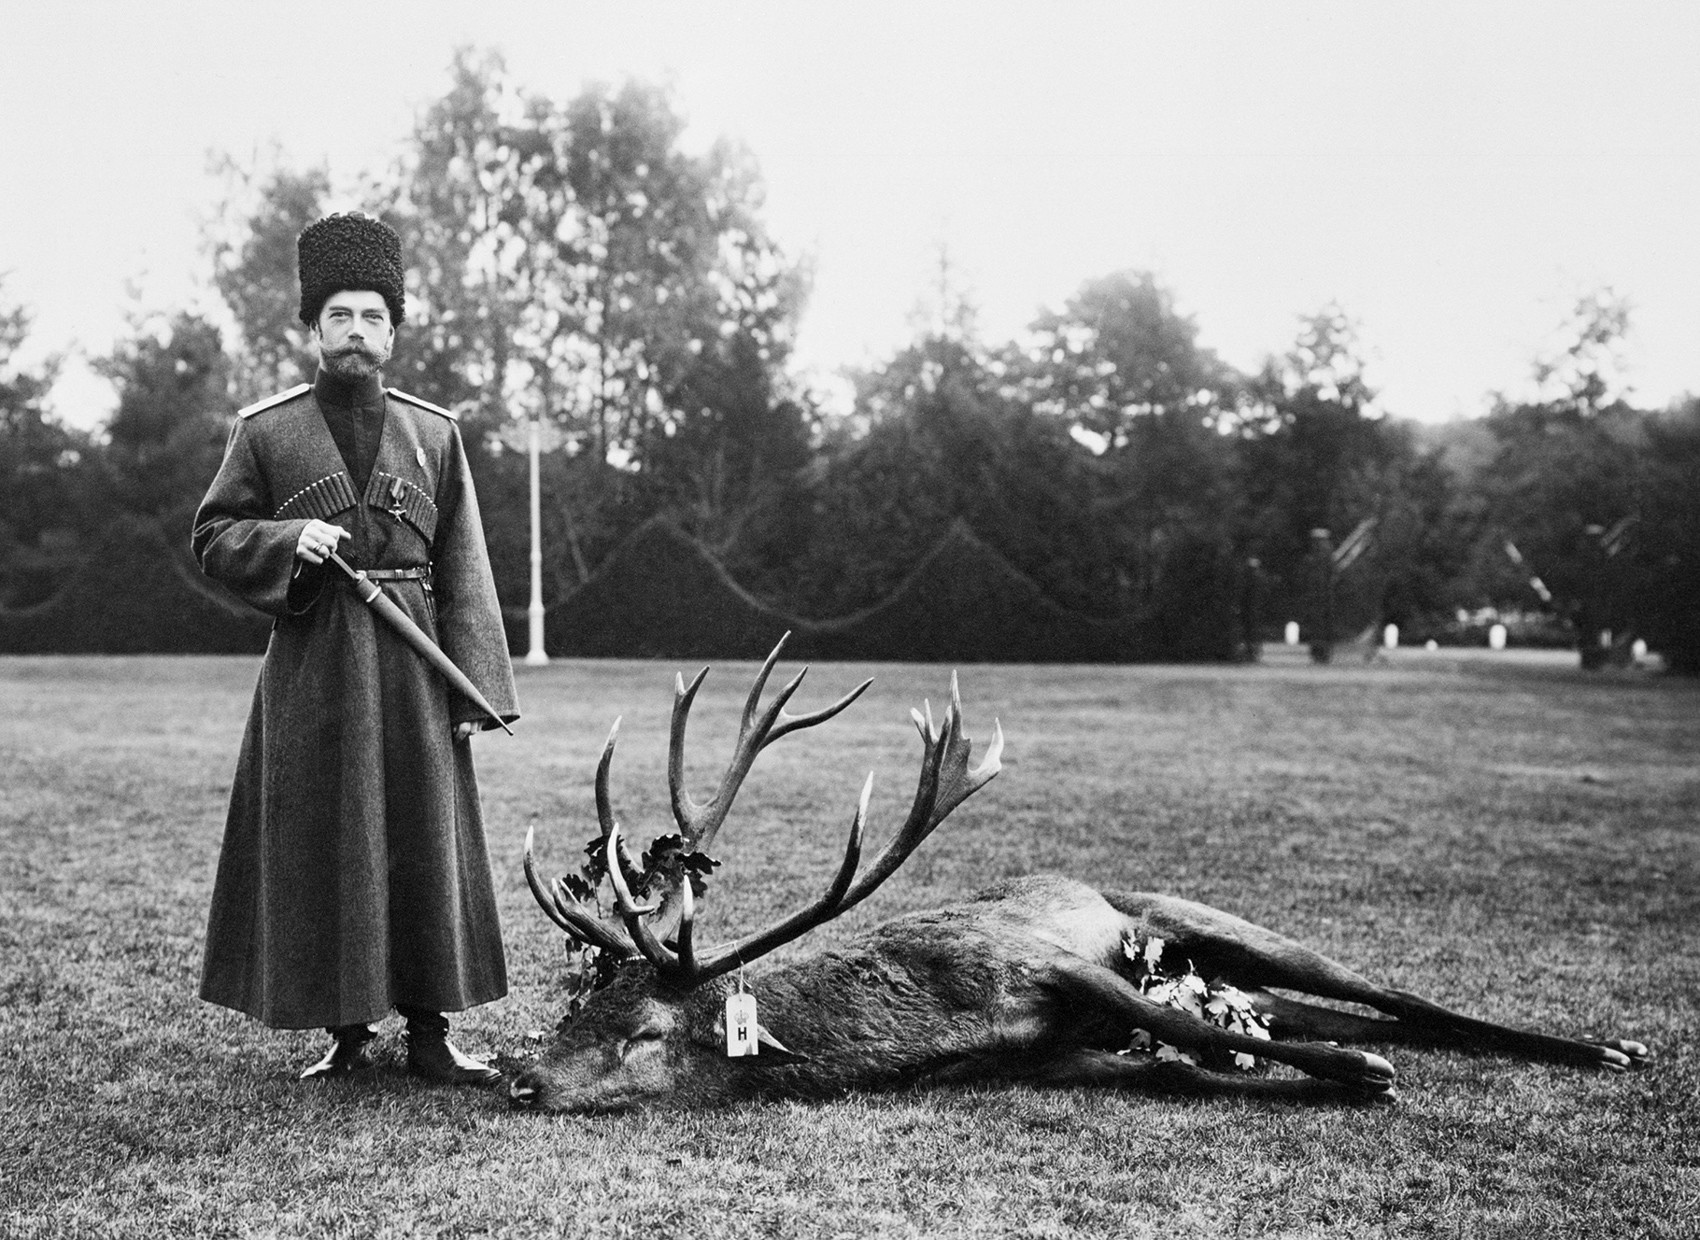 Nikolai 2° caçando, na década de 1910.